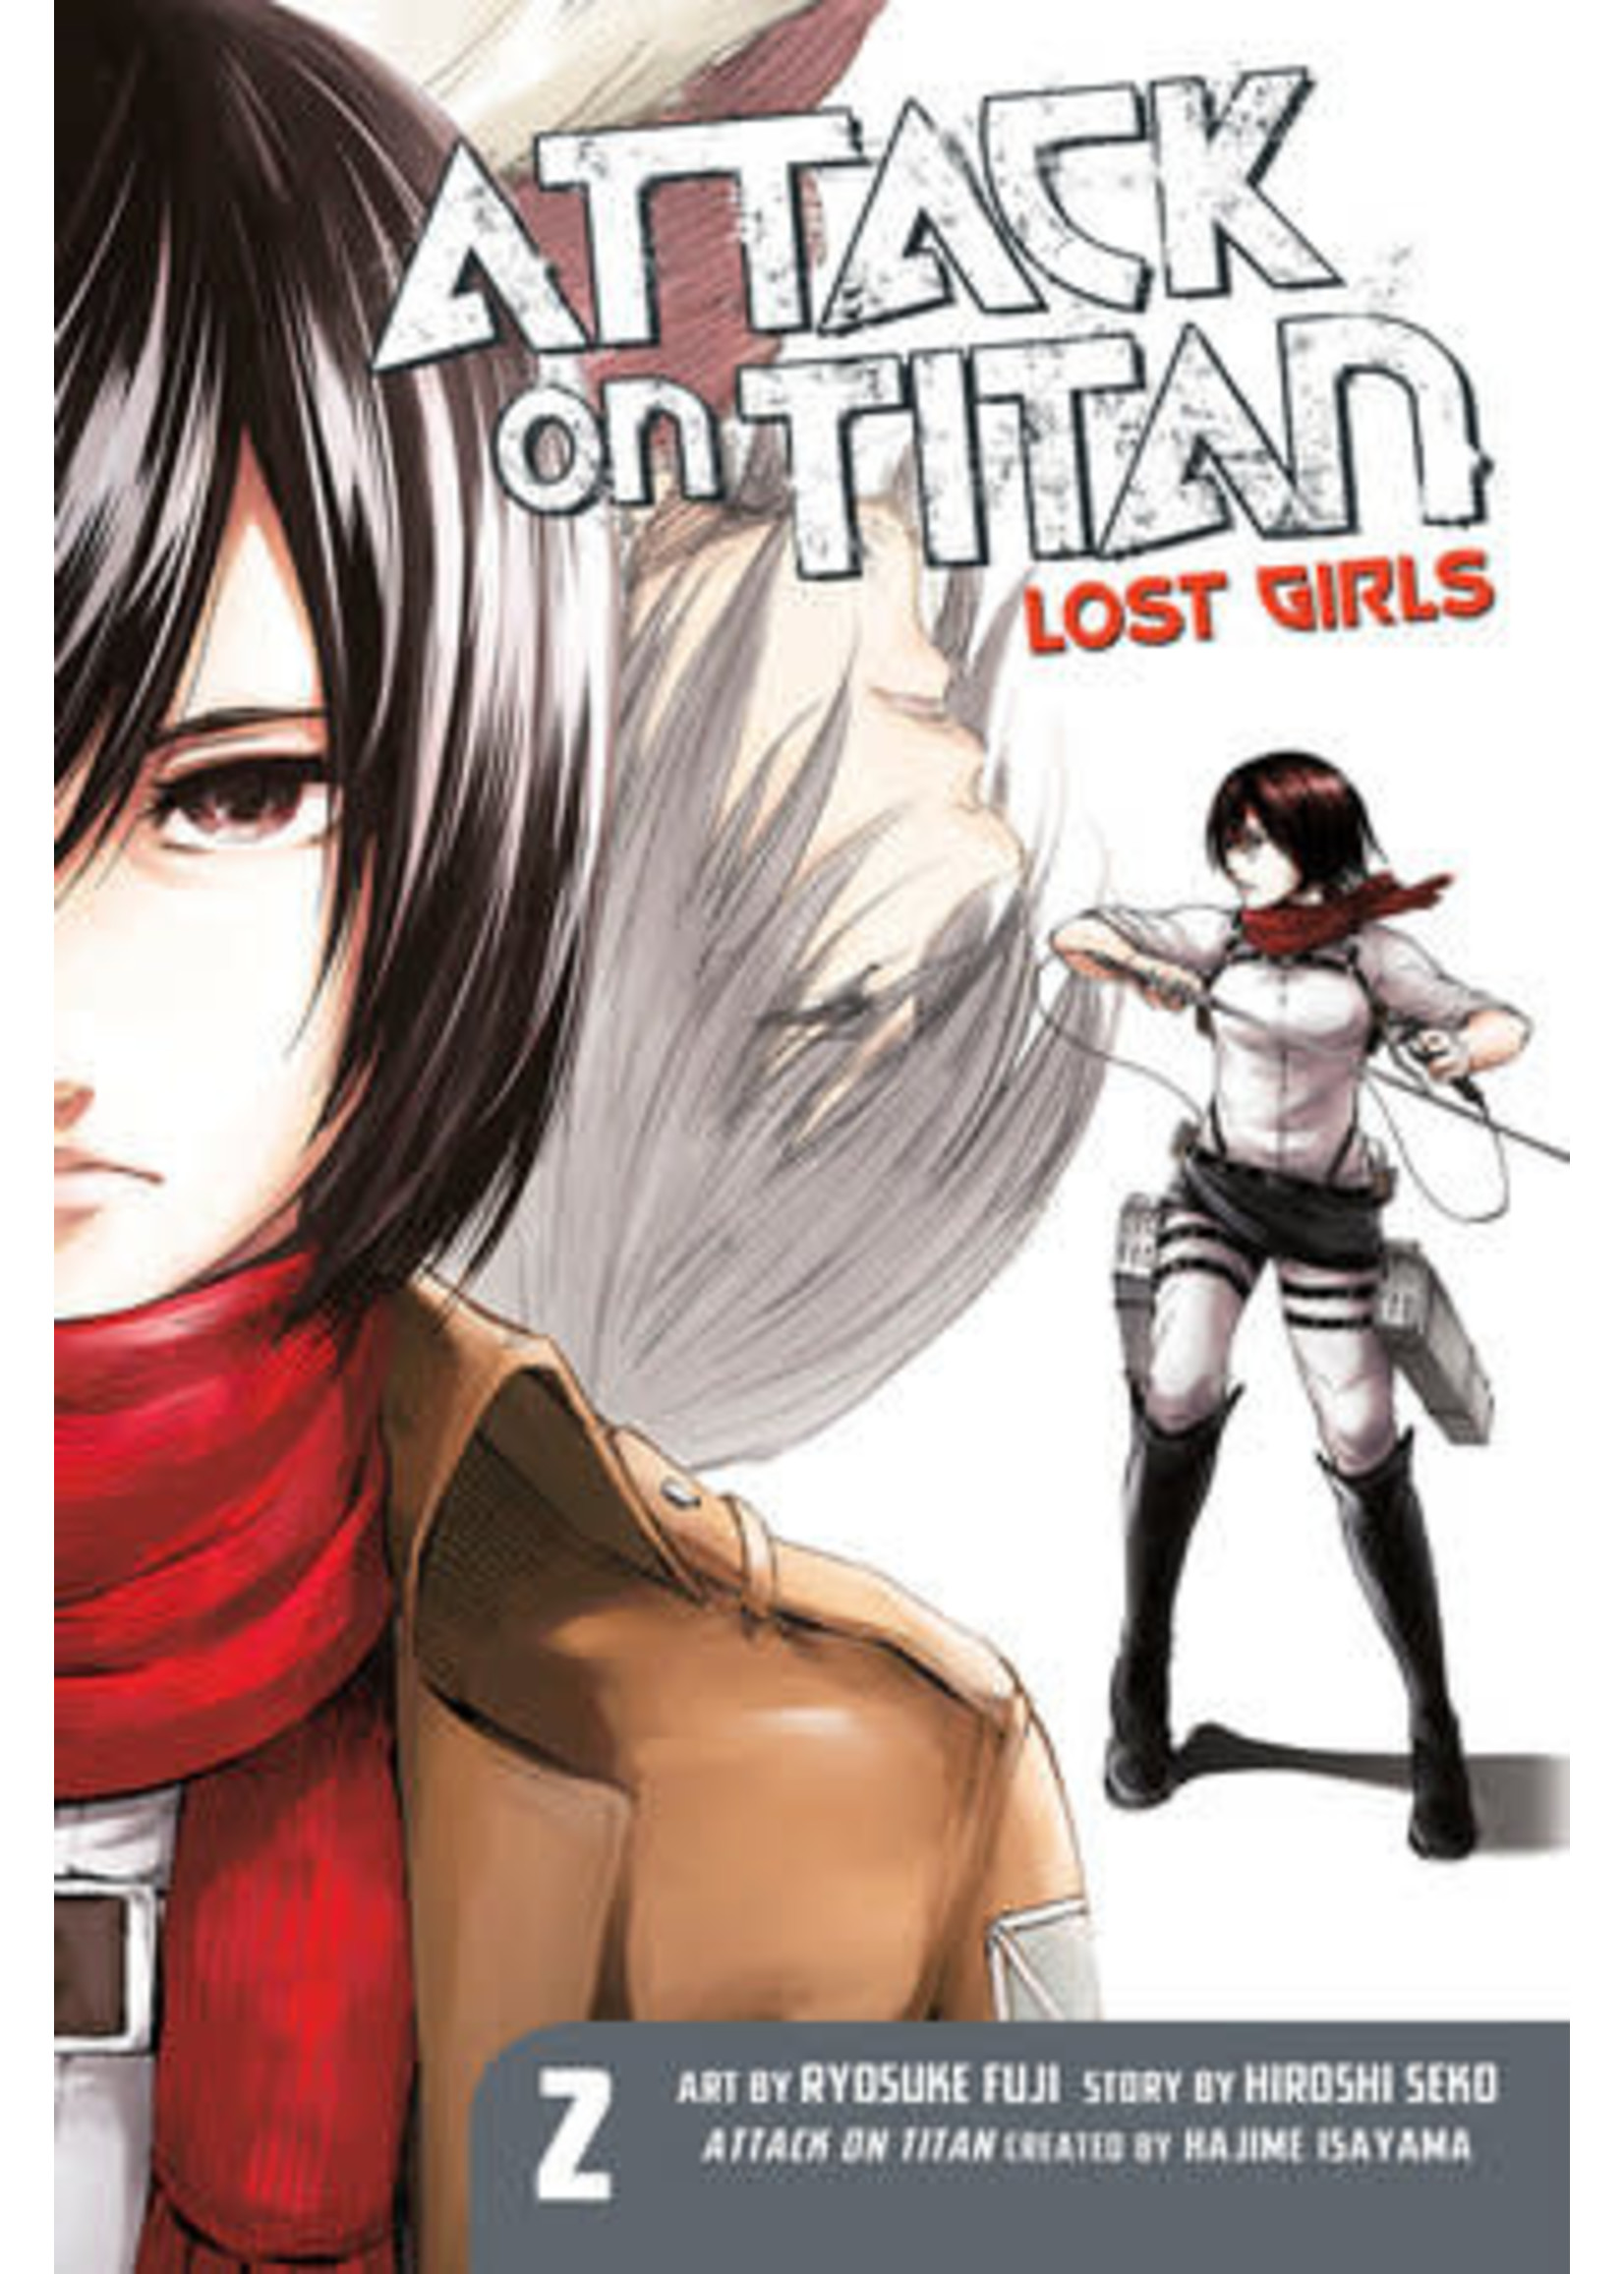 KODANSHA COMICS ATTACK ON TITAN: LOST GIRLS THE MANGA VOL 2